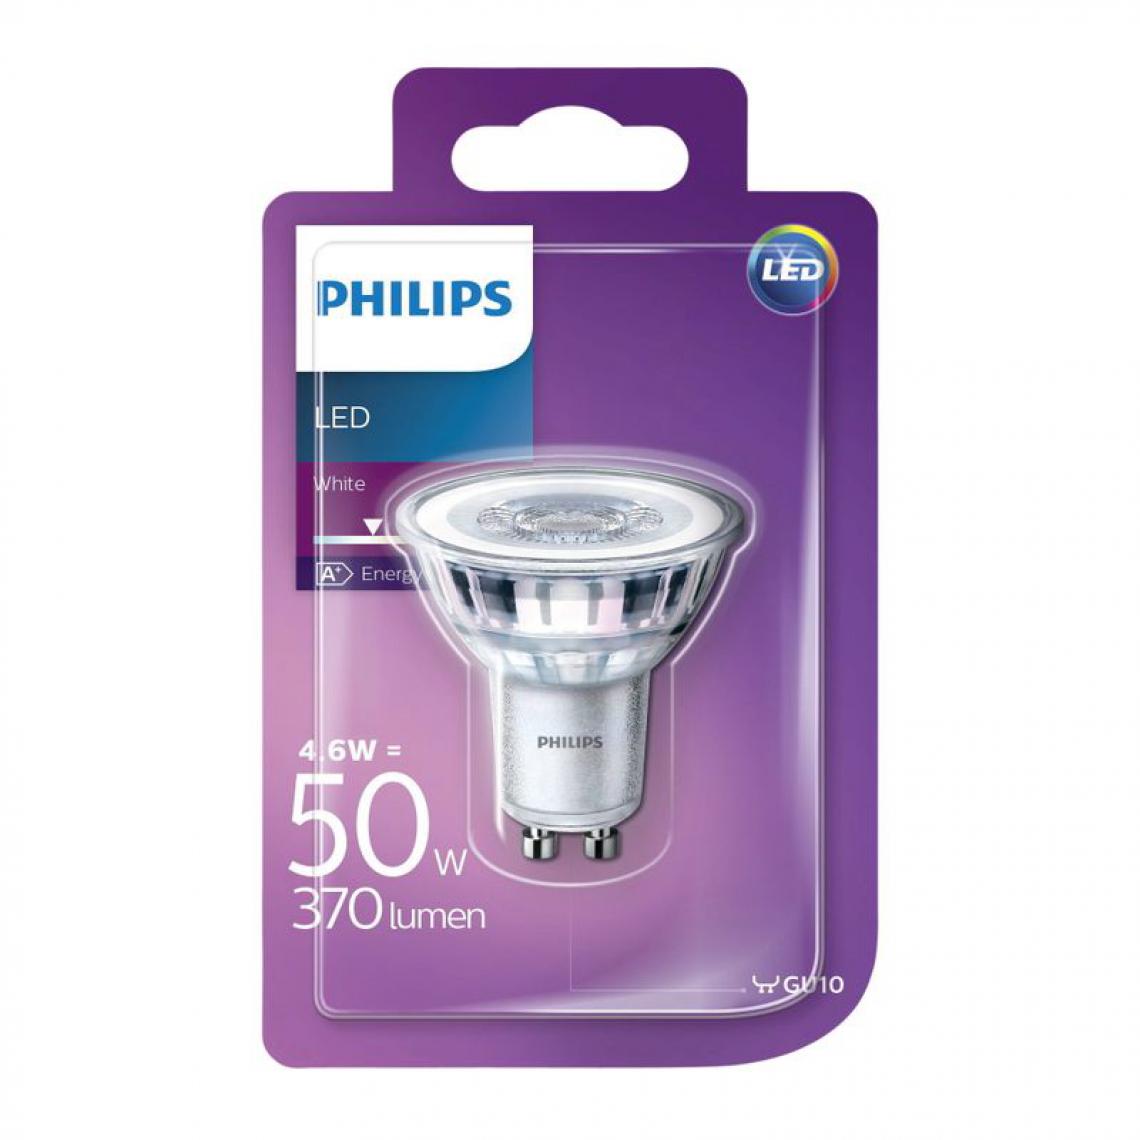 Philips - Ampoule LED 4,6W équiv 50W 370lm GU10 Blanc chaud - Ampoules LED